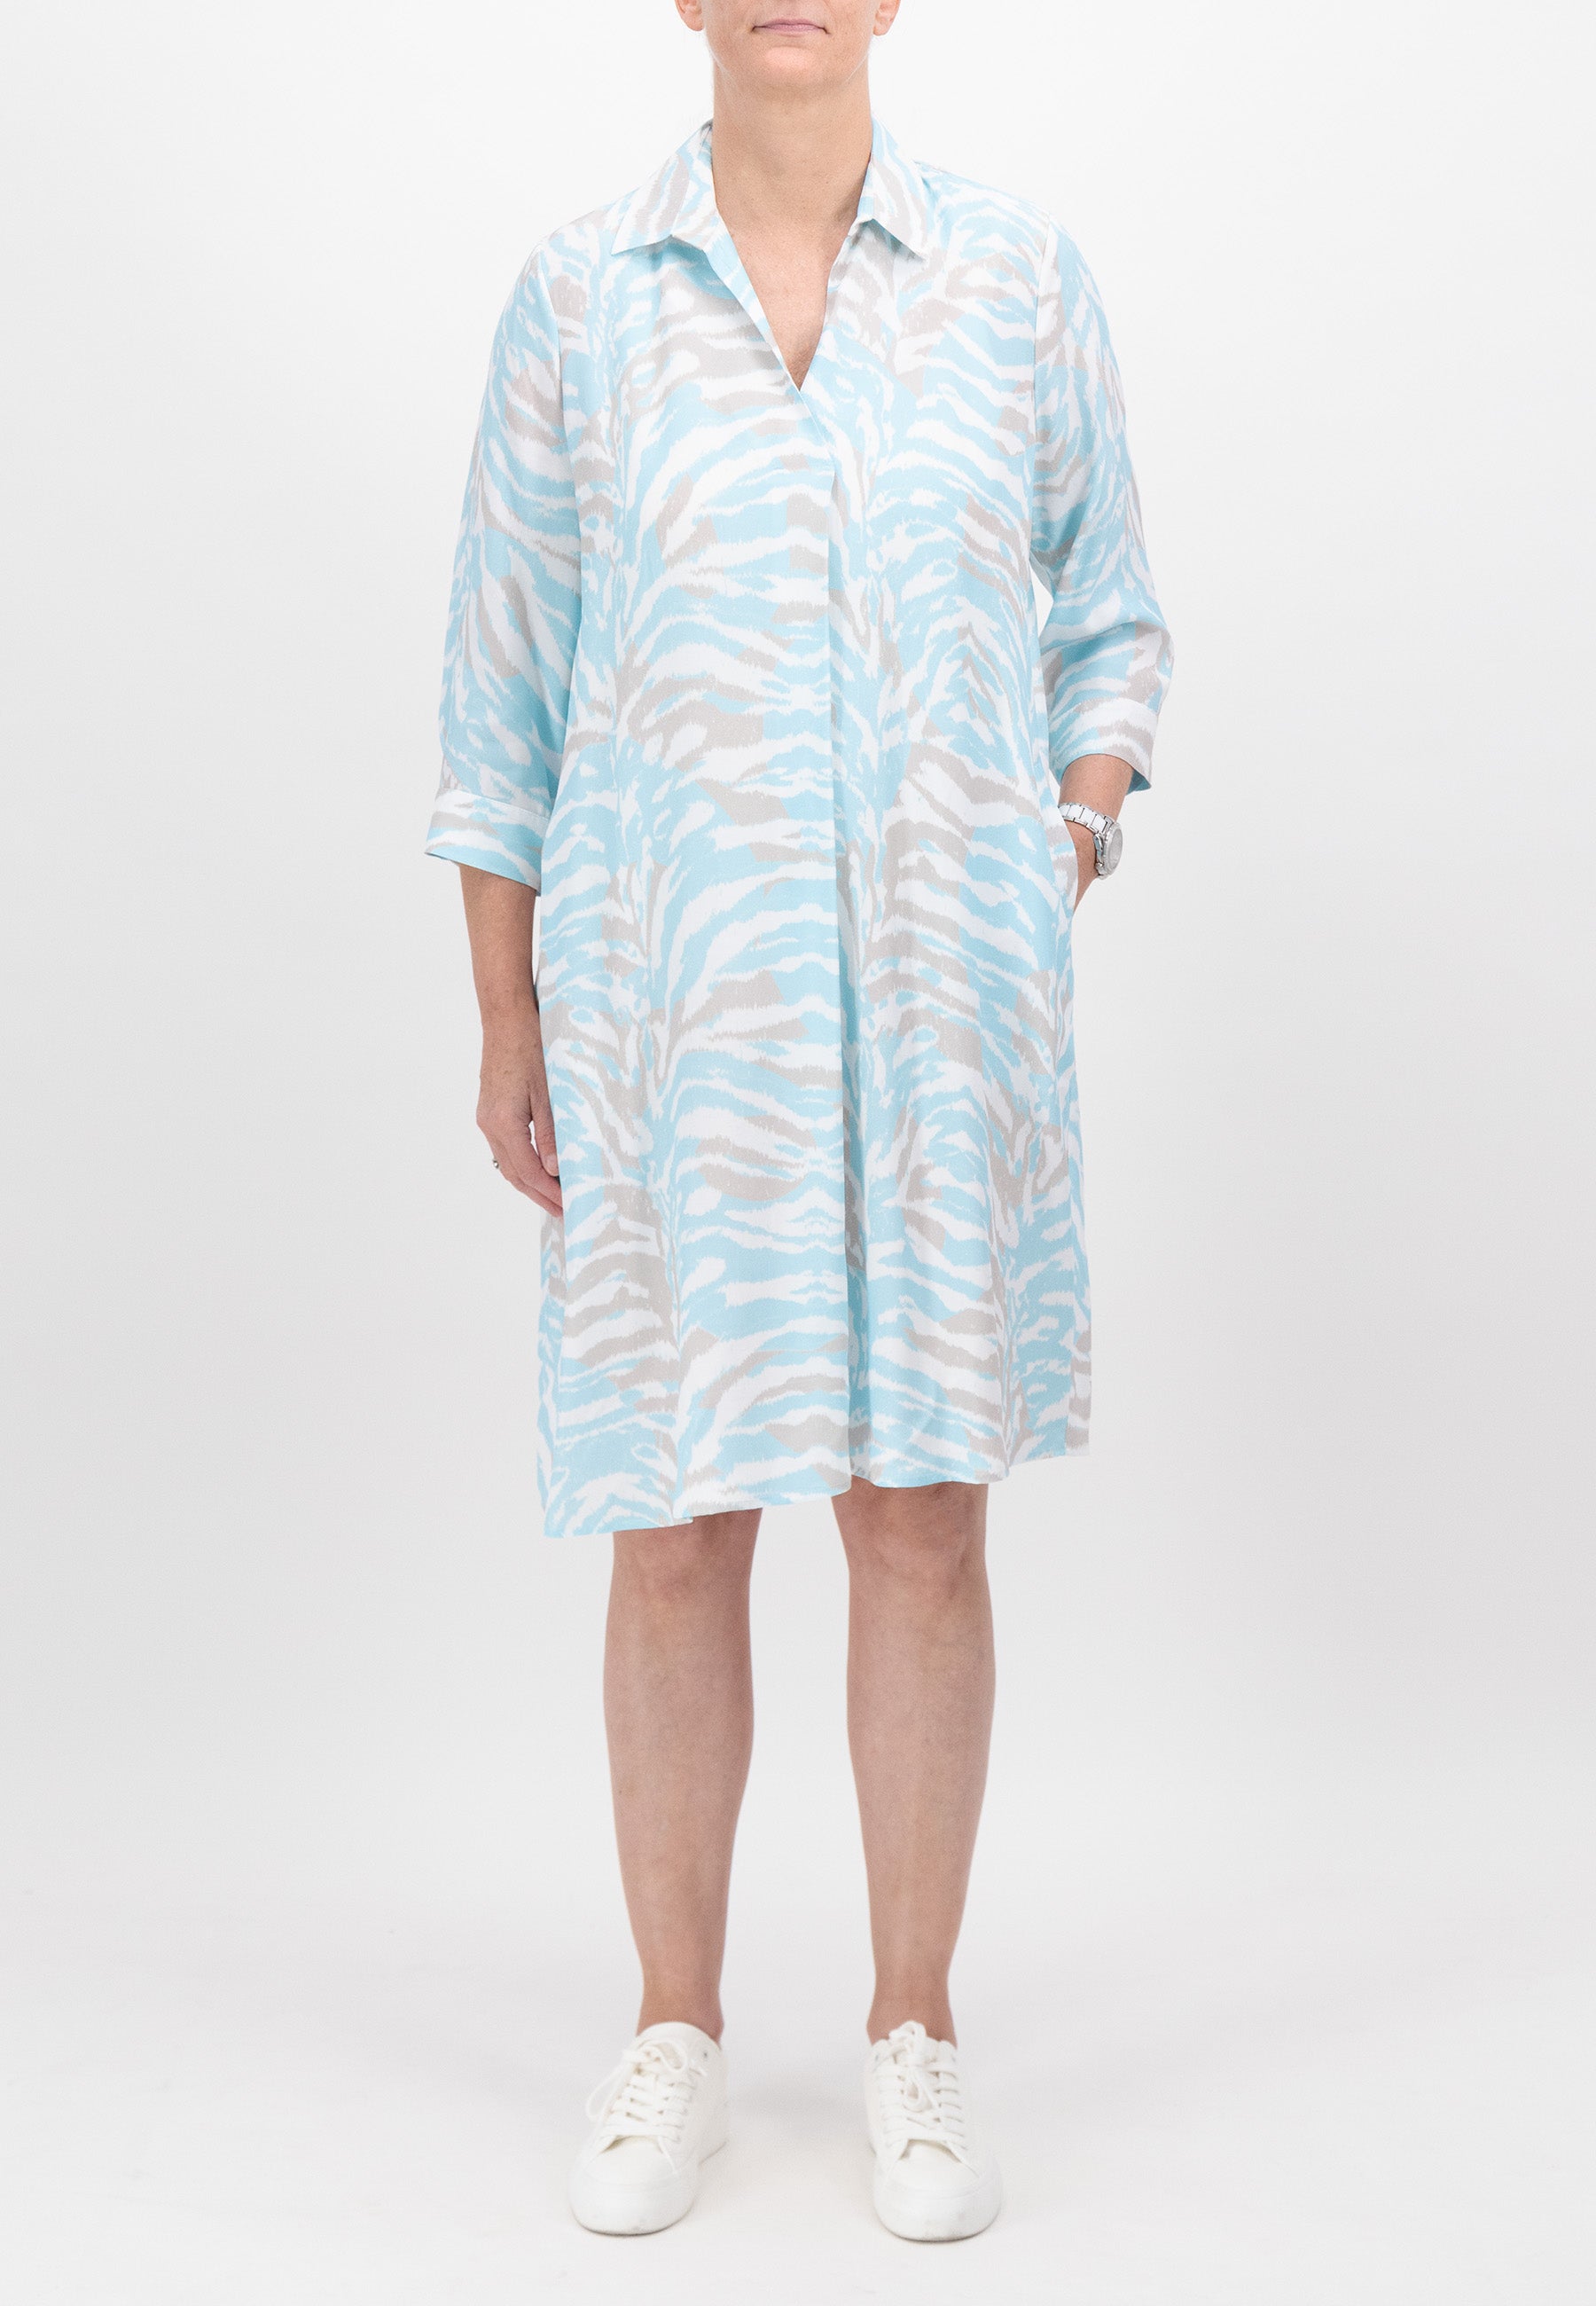 Aqua Patterned Dress - J4289